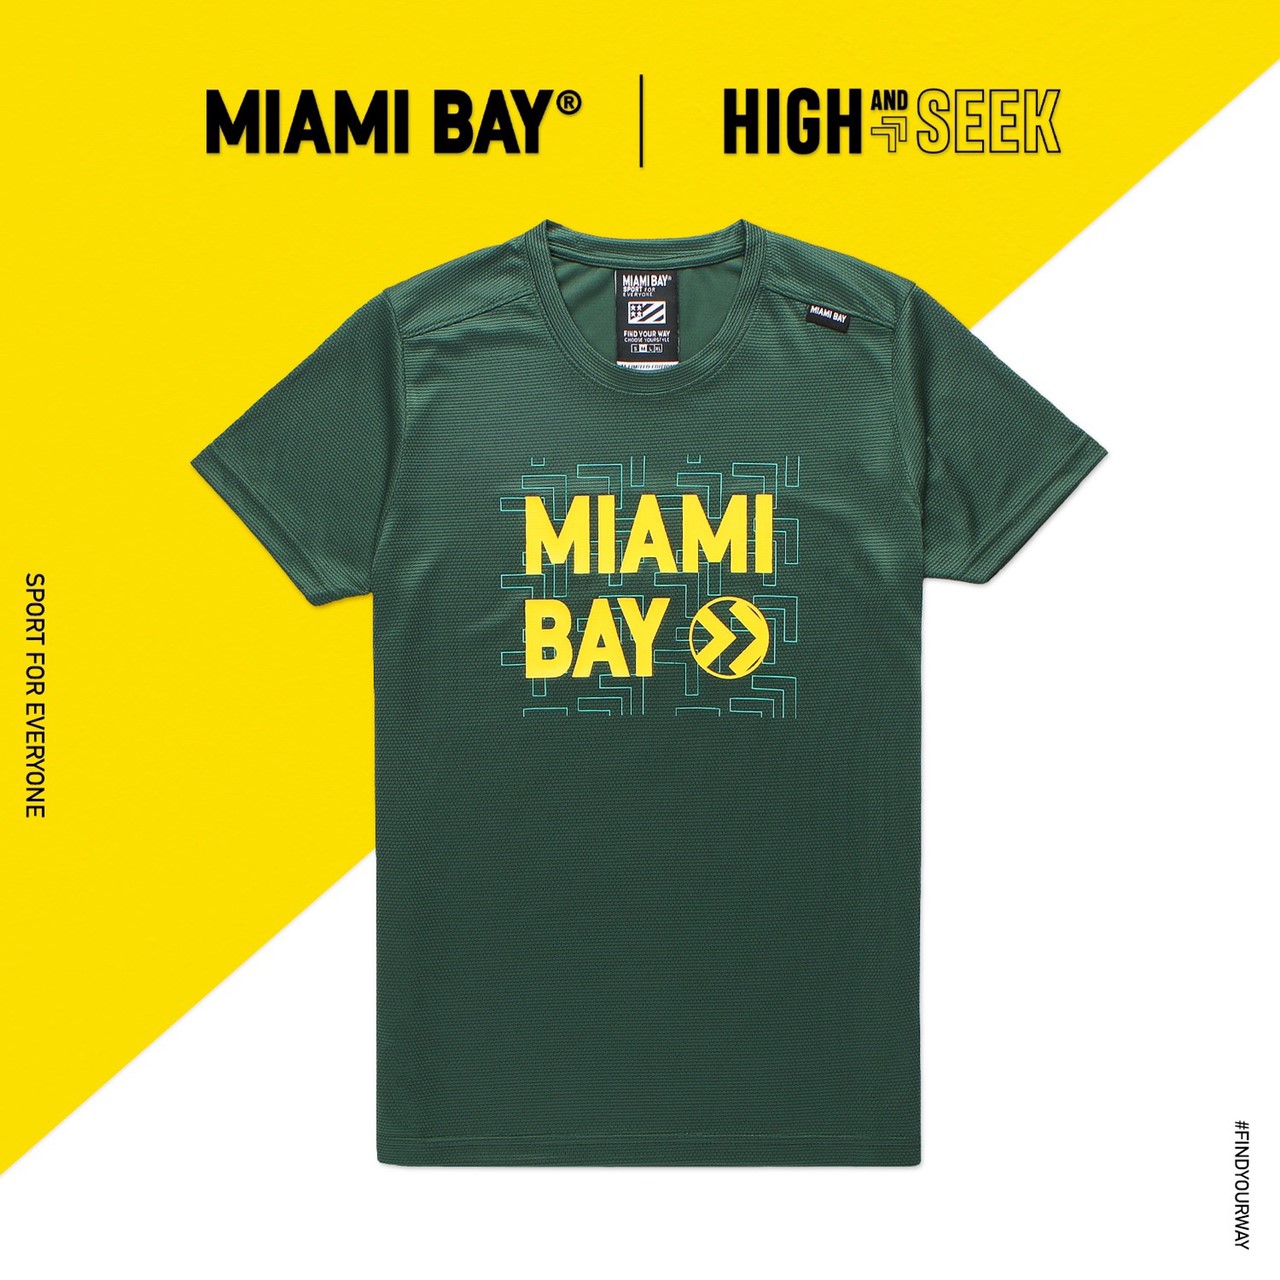 MIAMI BAY เสื้อกีฬา รุ่นHighAndSeek สีเขียว (ผู้ชาย) ของแท้100%